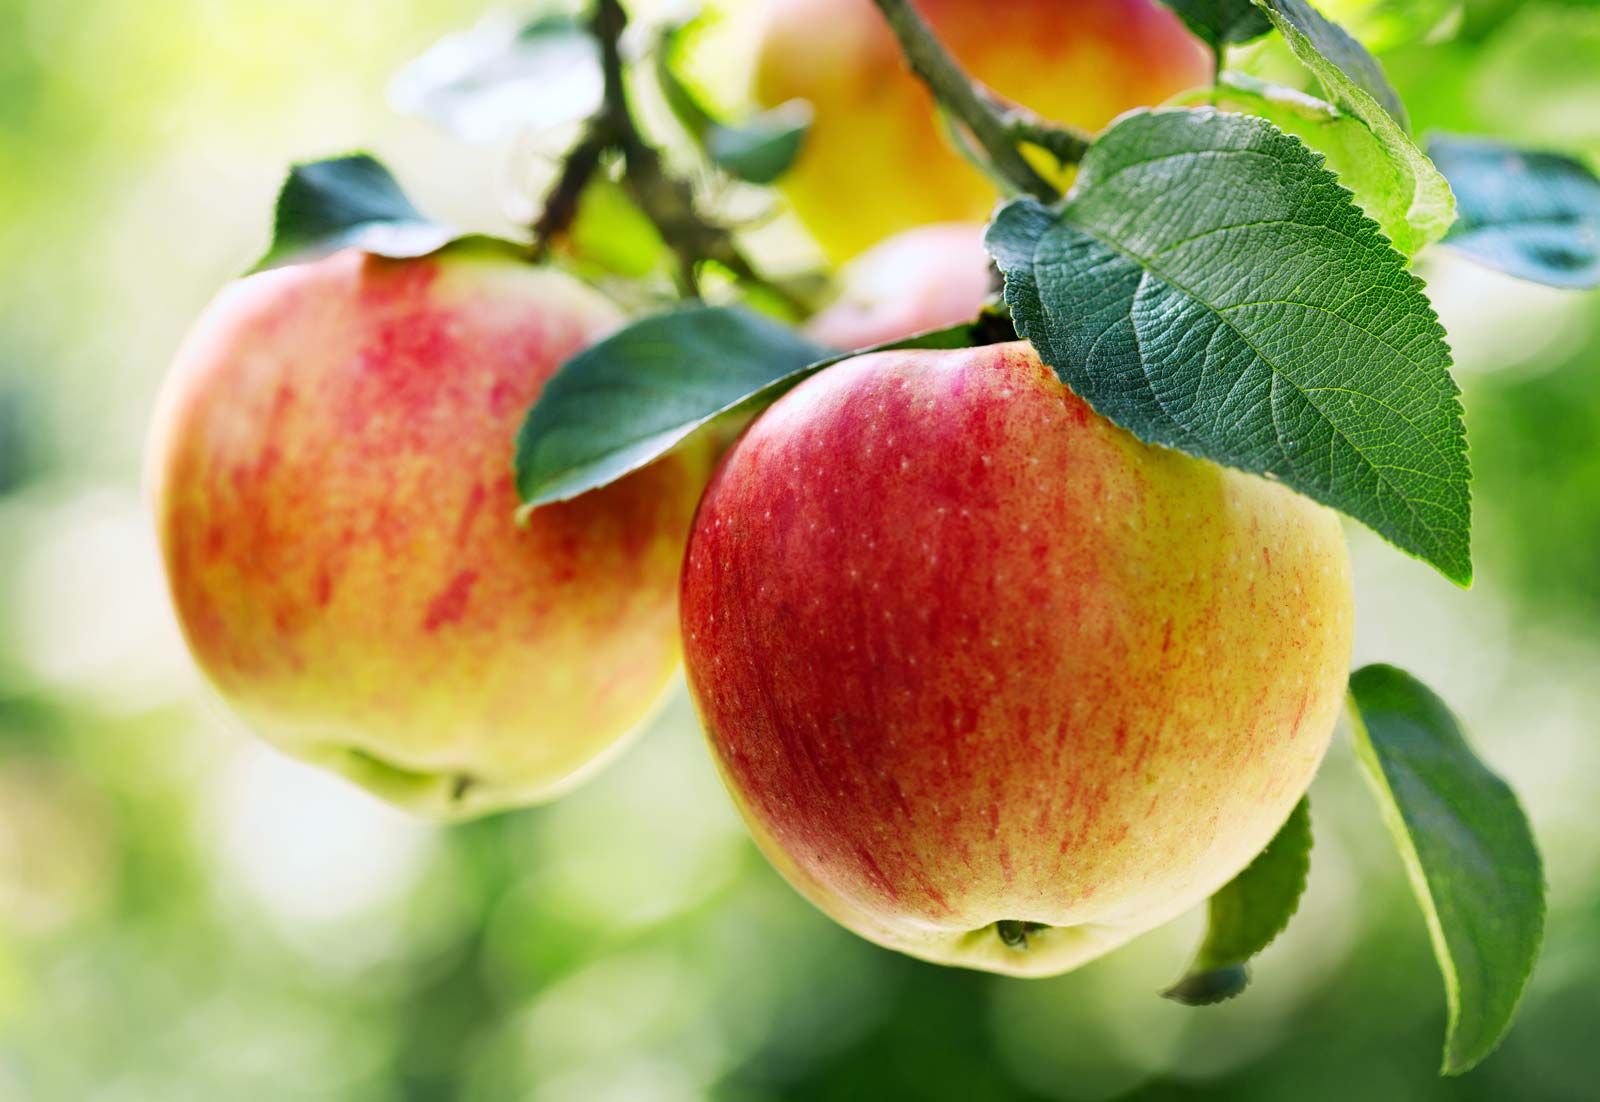 Apple | Description, Cultivation, Domestication, Varieties, Uses, Nutrition, & Facts | Britannica